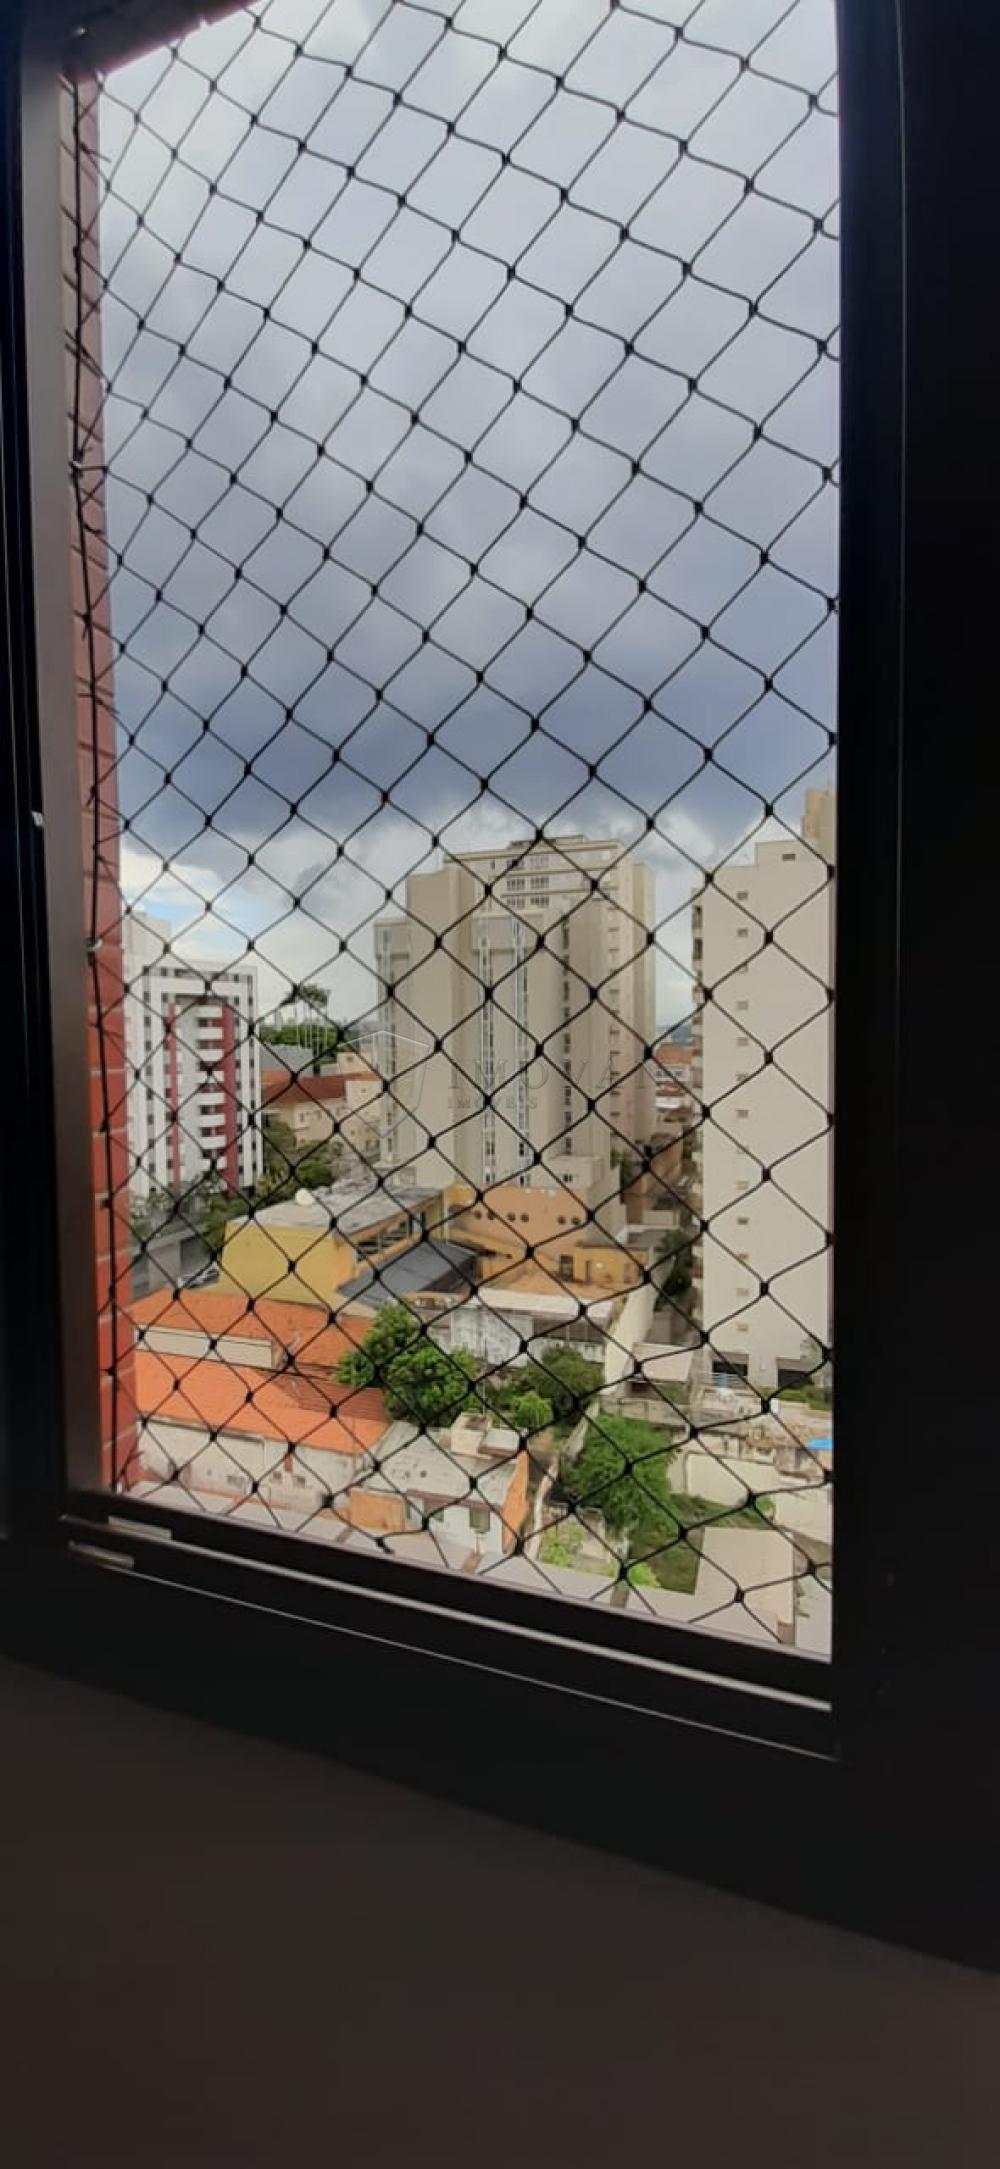 Comprar Apartamento / Padrão em Ribeirão Preto R$ 315.000,00 - Foto 11